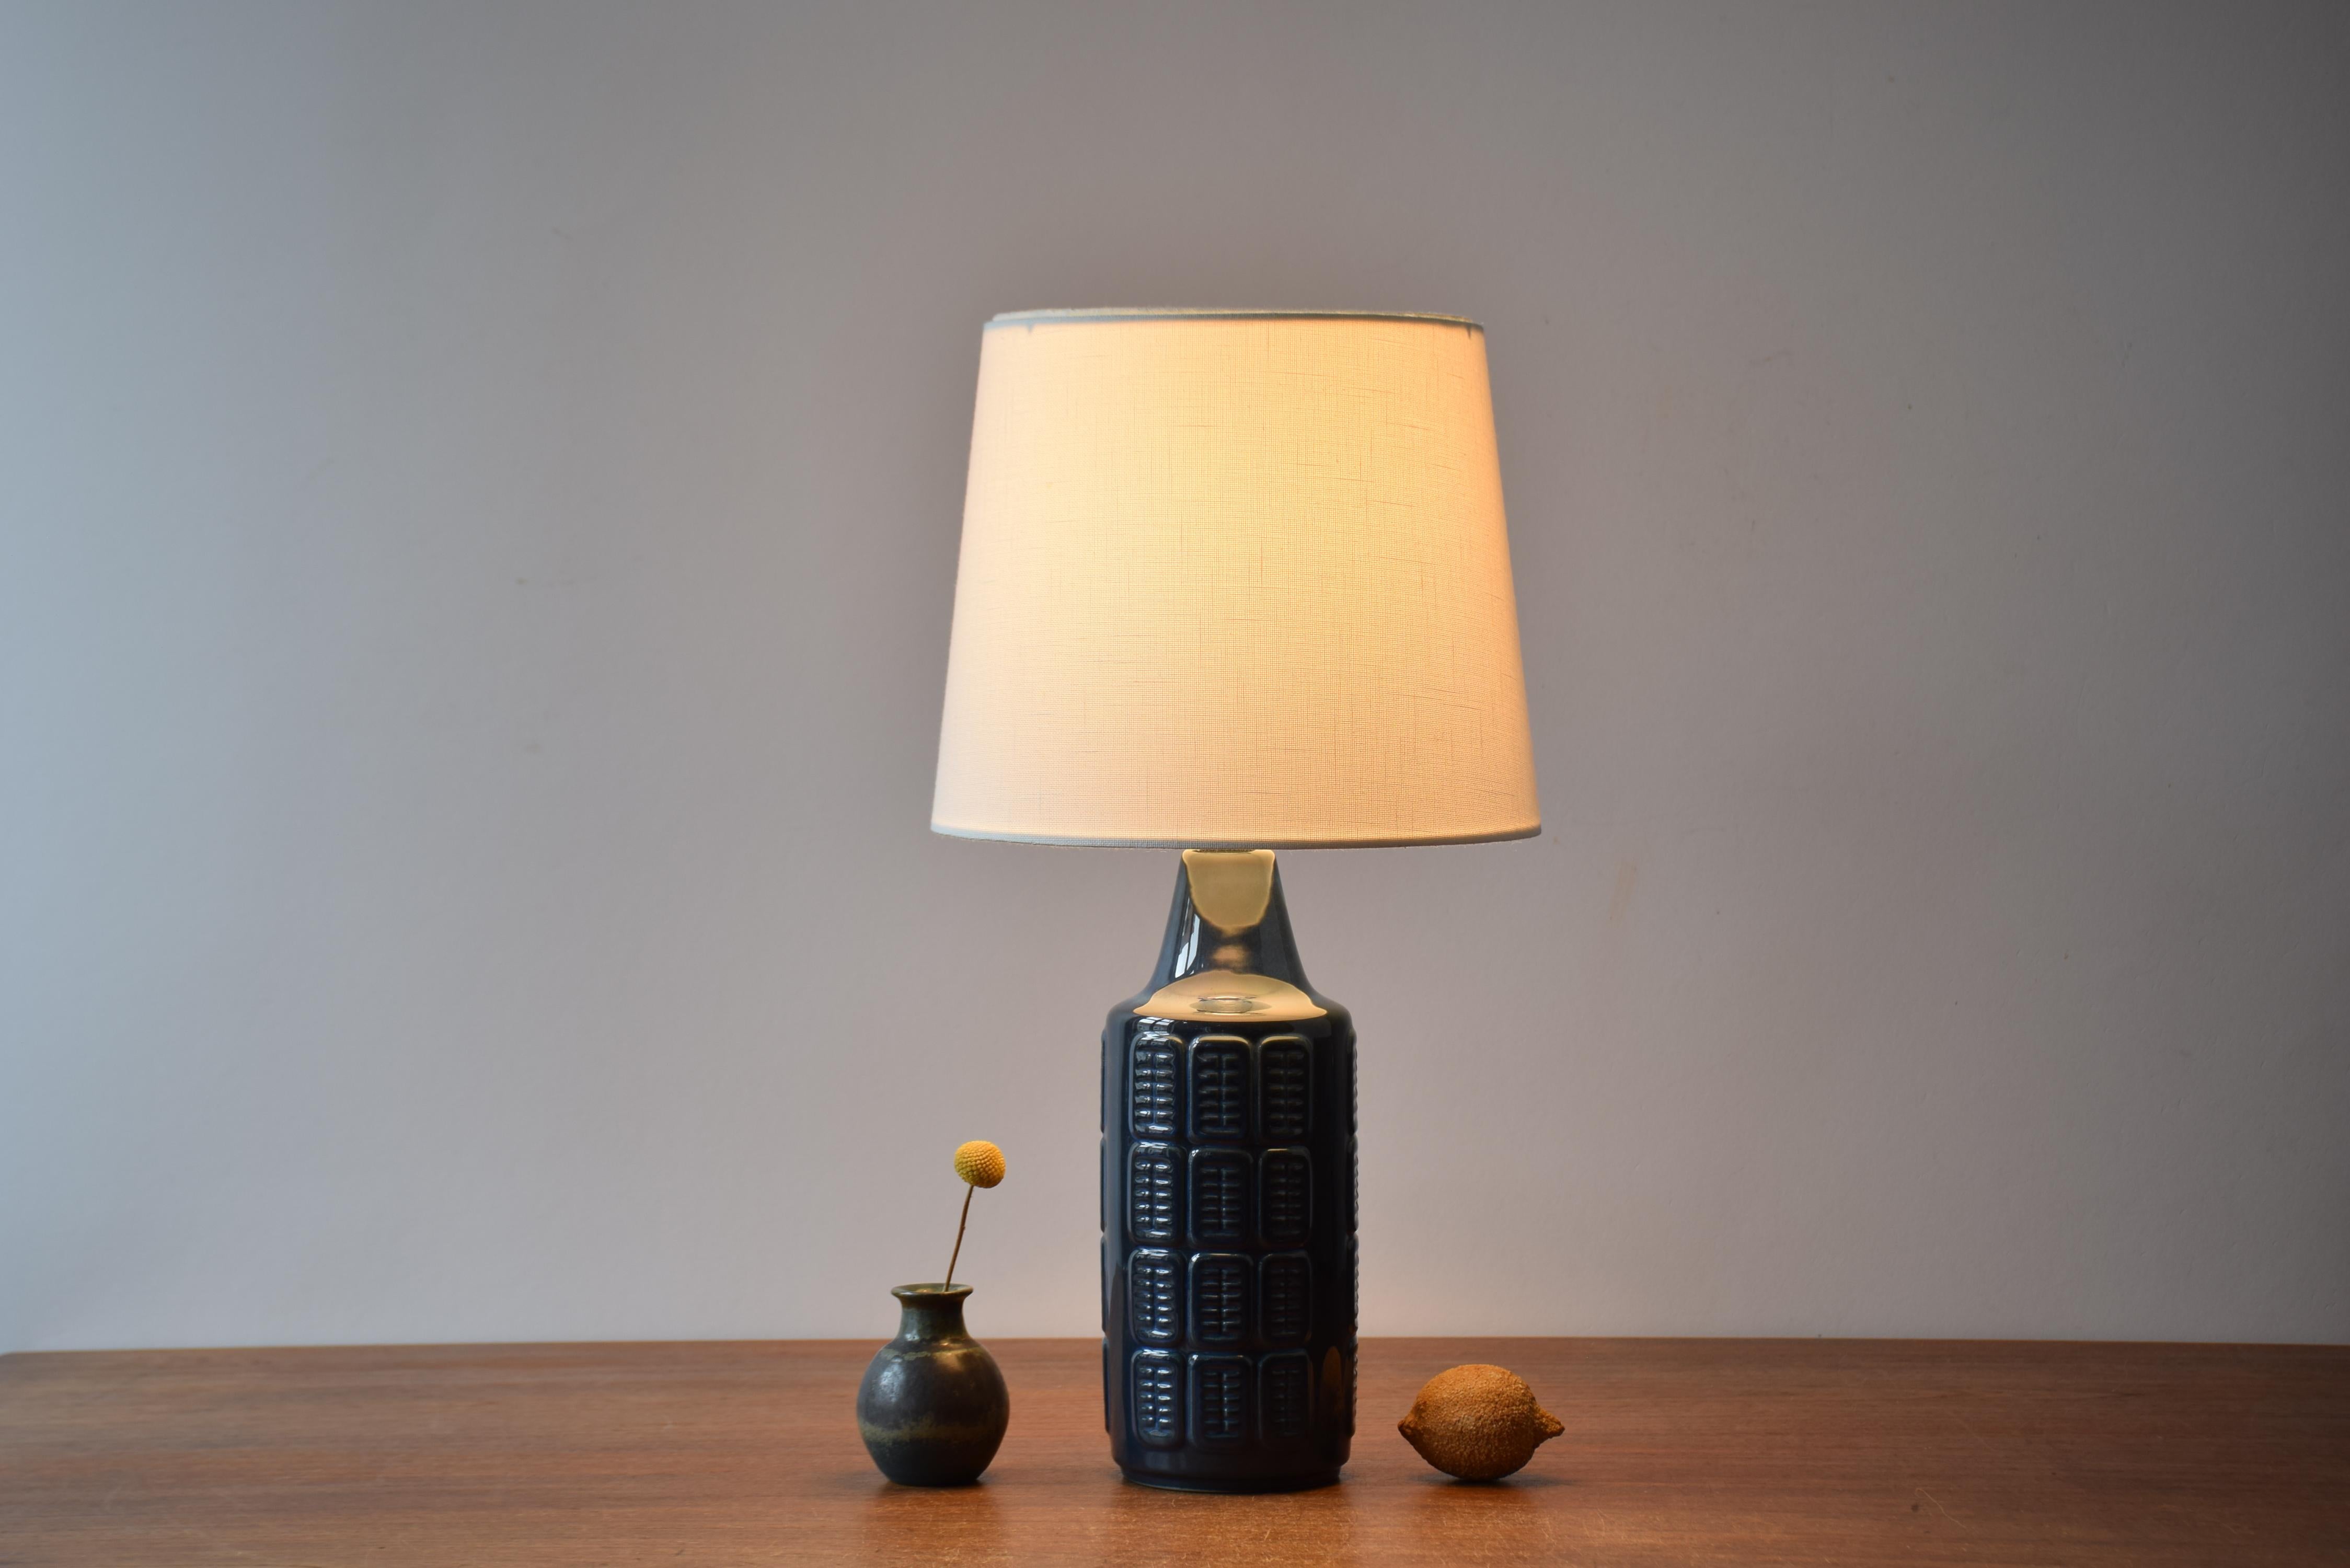 Lampe de table par Einar Johansen pour Søholm Stentøj, Danemark, vers les années 1960.
La lampe est recouverte d'une glaçure bleue brillante et d'un décor graphique répété en relief. 

Un nouvel abat-jour conçu et fabriqué au Danemark est inclus. Il